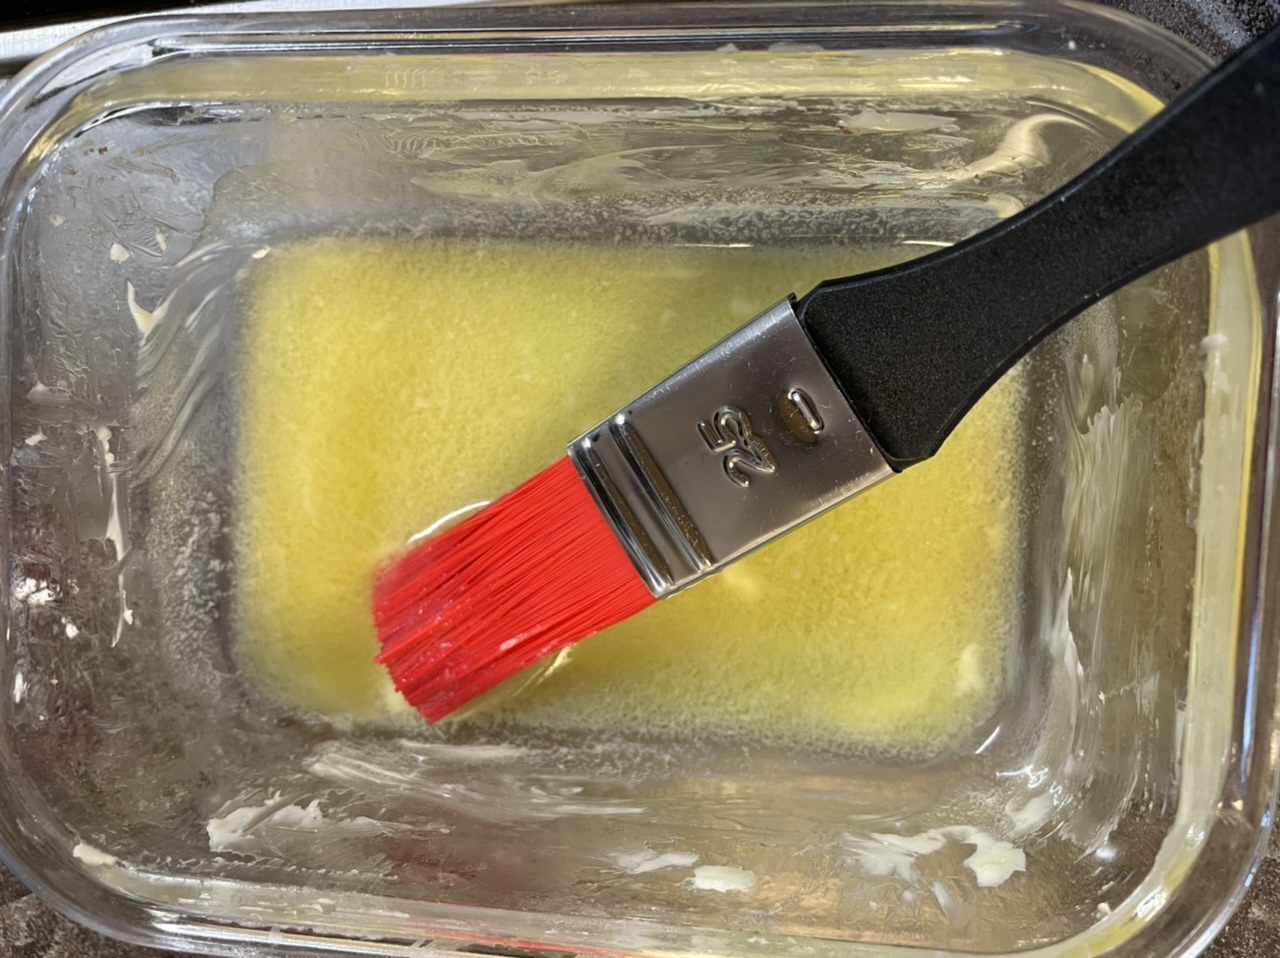 Bild zum Schritt 5 für das Bastel- und DIY-Abenteuer für Kinder: 'Danach erwärmt ihr die Butter in einer kleinen Schüssel.'